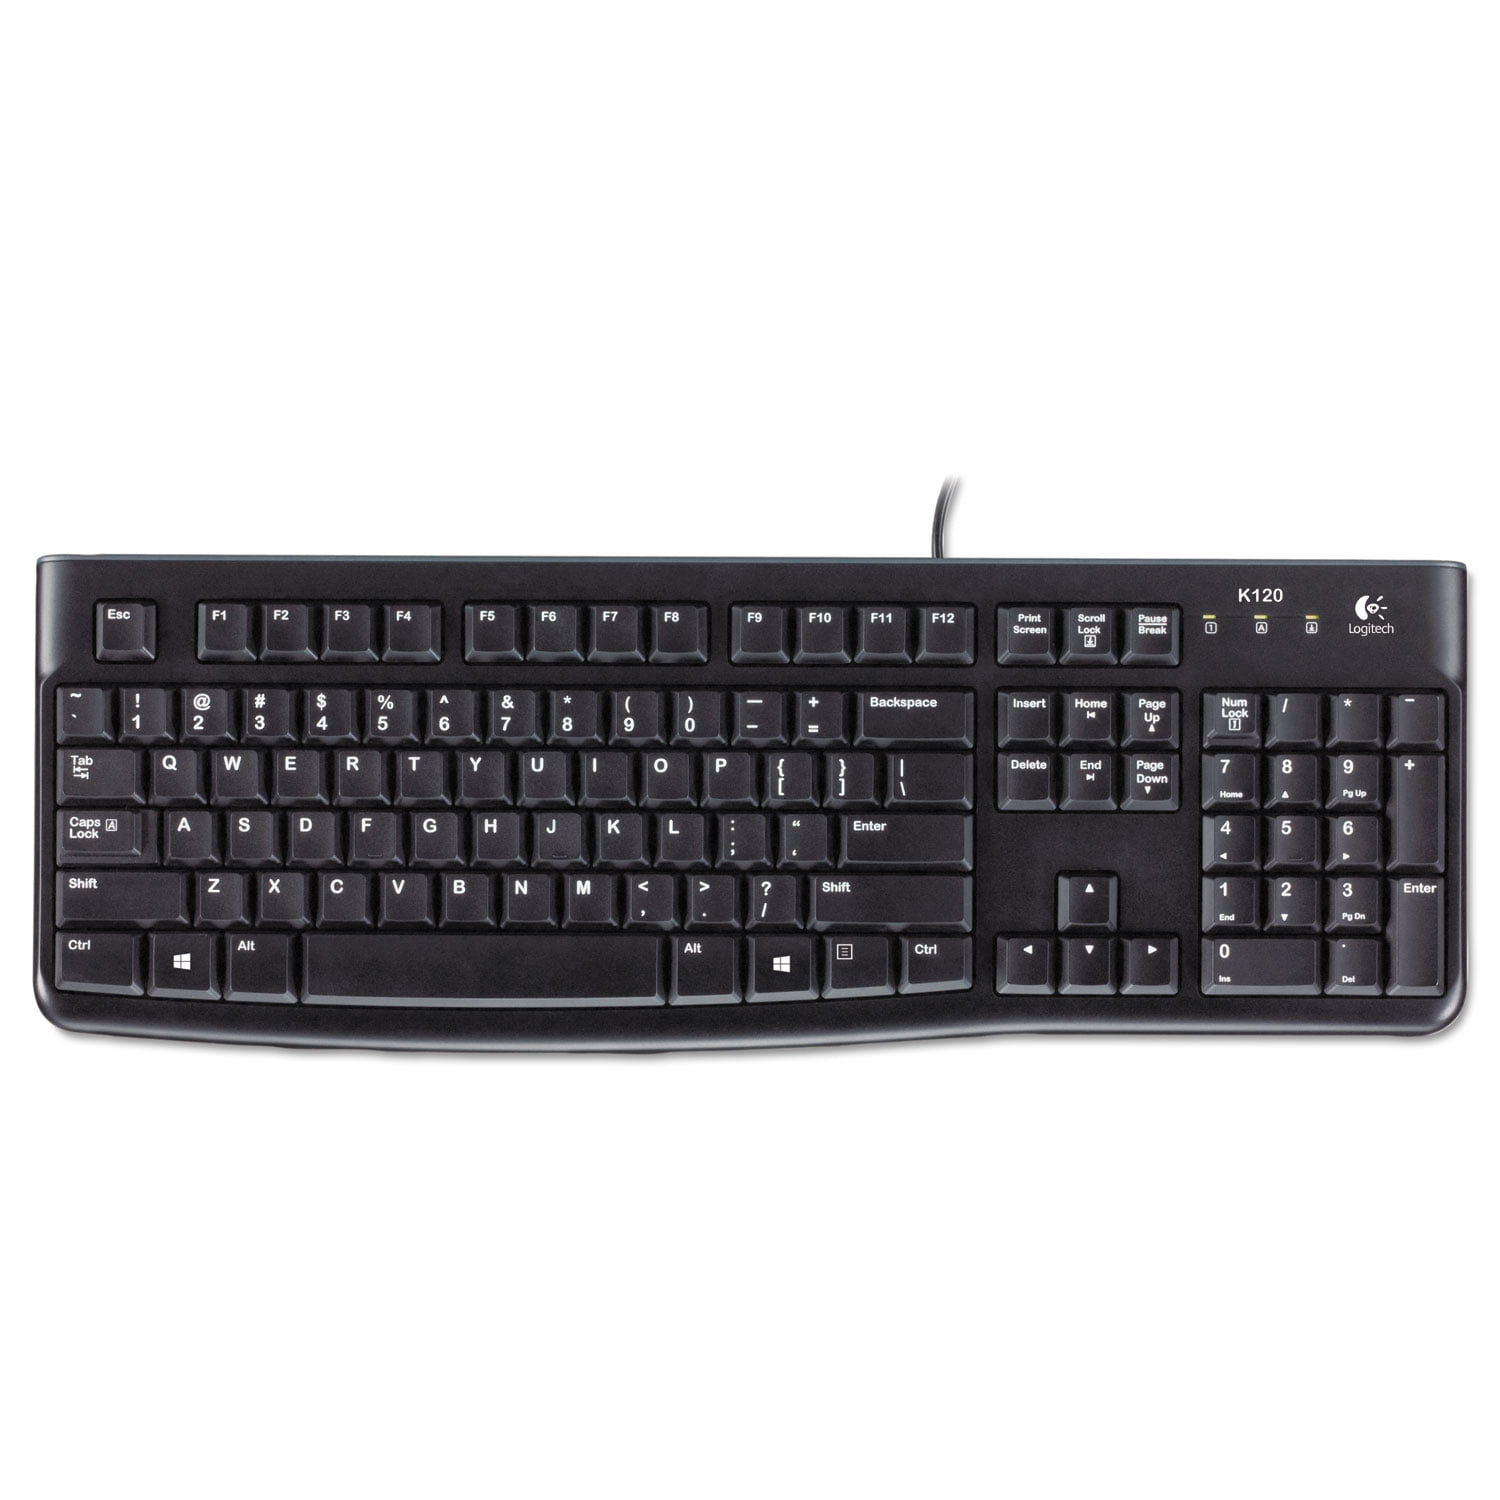 Logitech K120 Black (920002478) Keyboard, Desktop Wired USB, Ergonomic